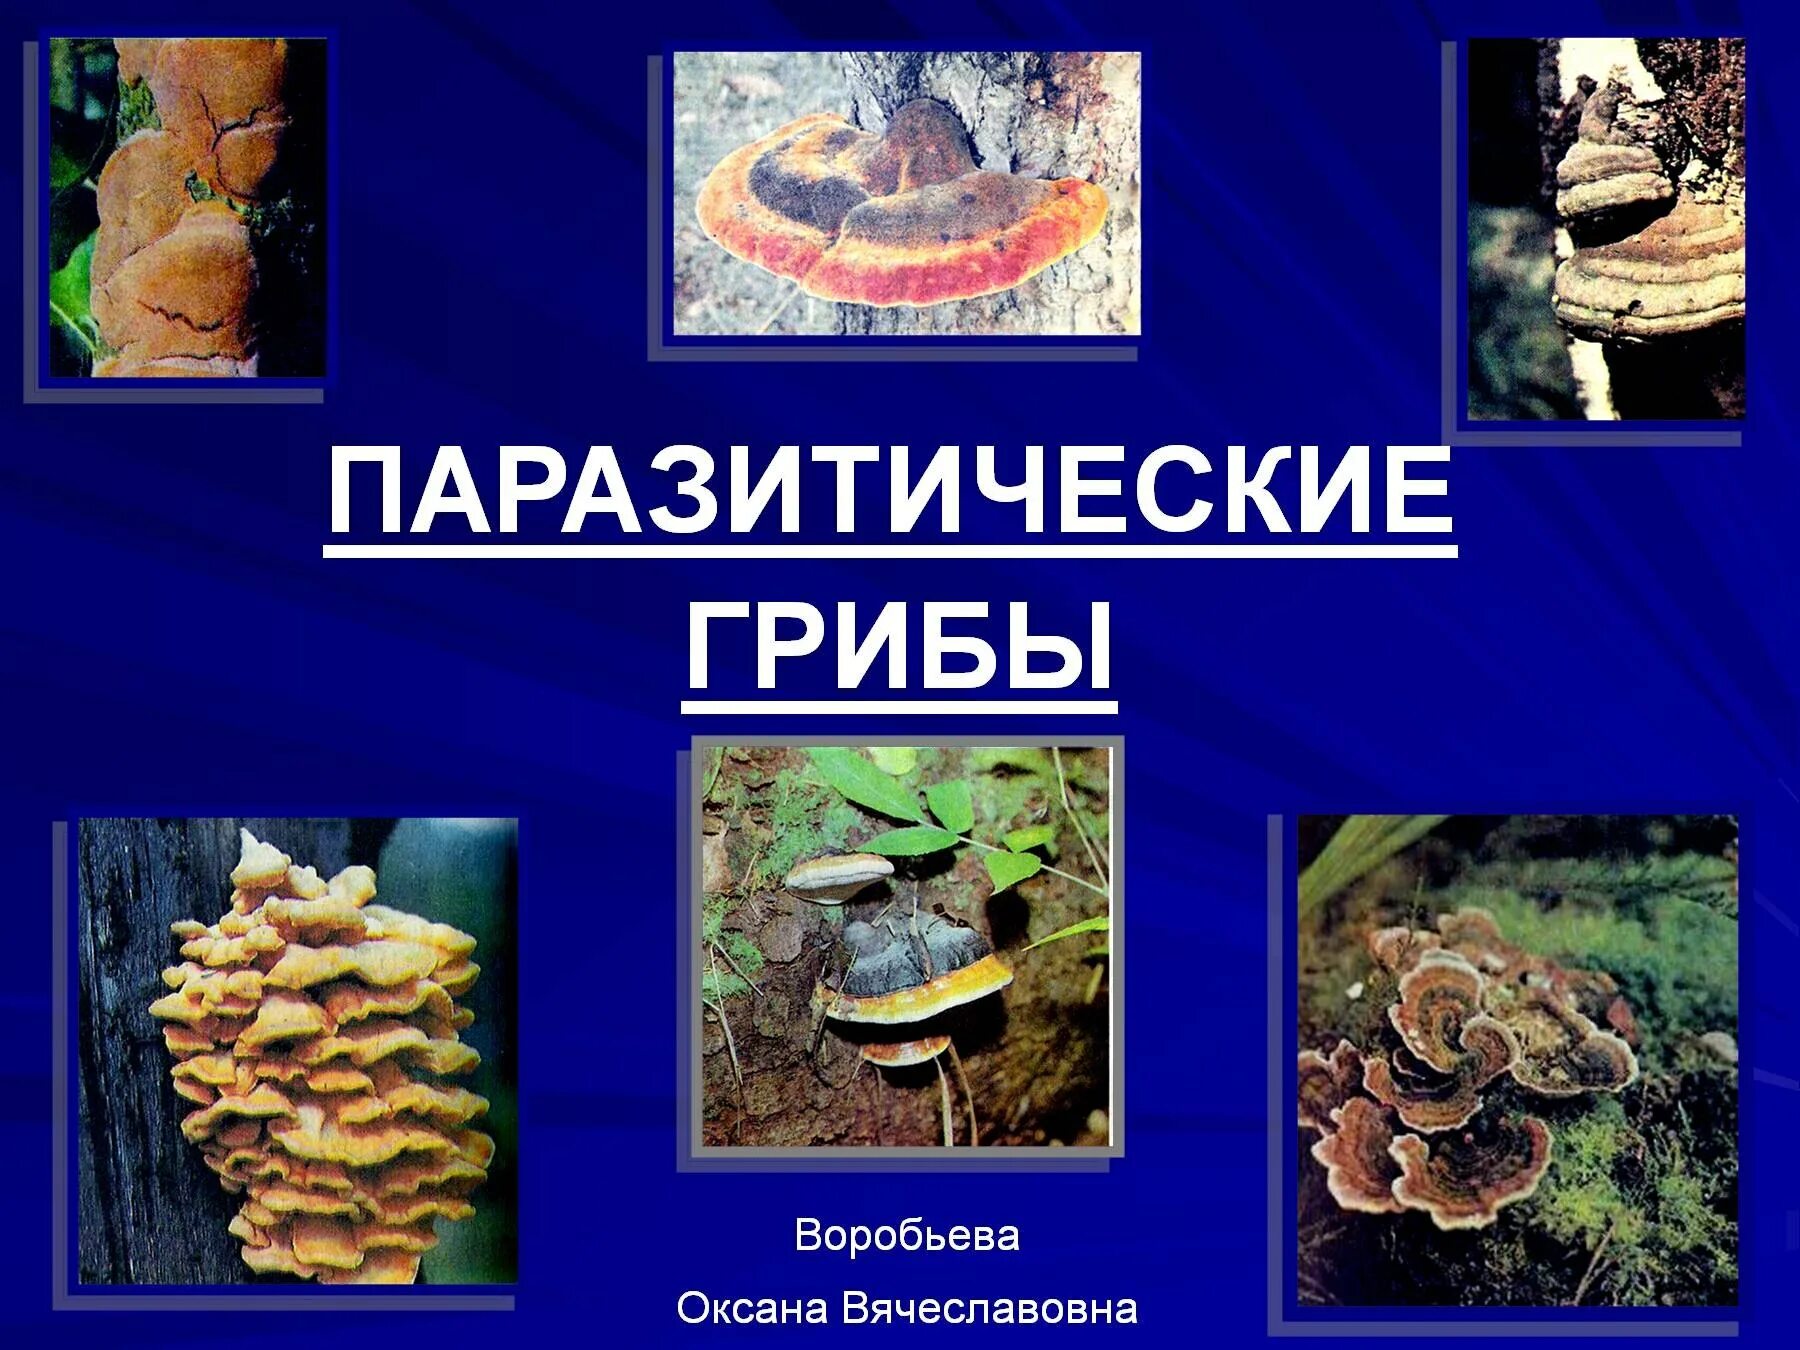 3 паразитических грибах. Паразитические грибы. Грибы паразиты биология. Презентация на тему грибы паразиты. Паразитизм грибы.